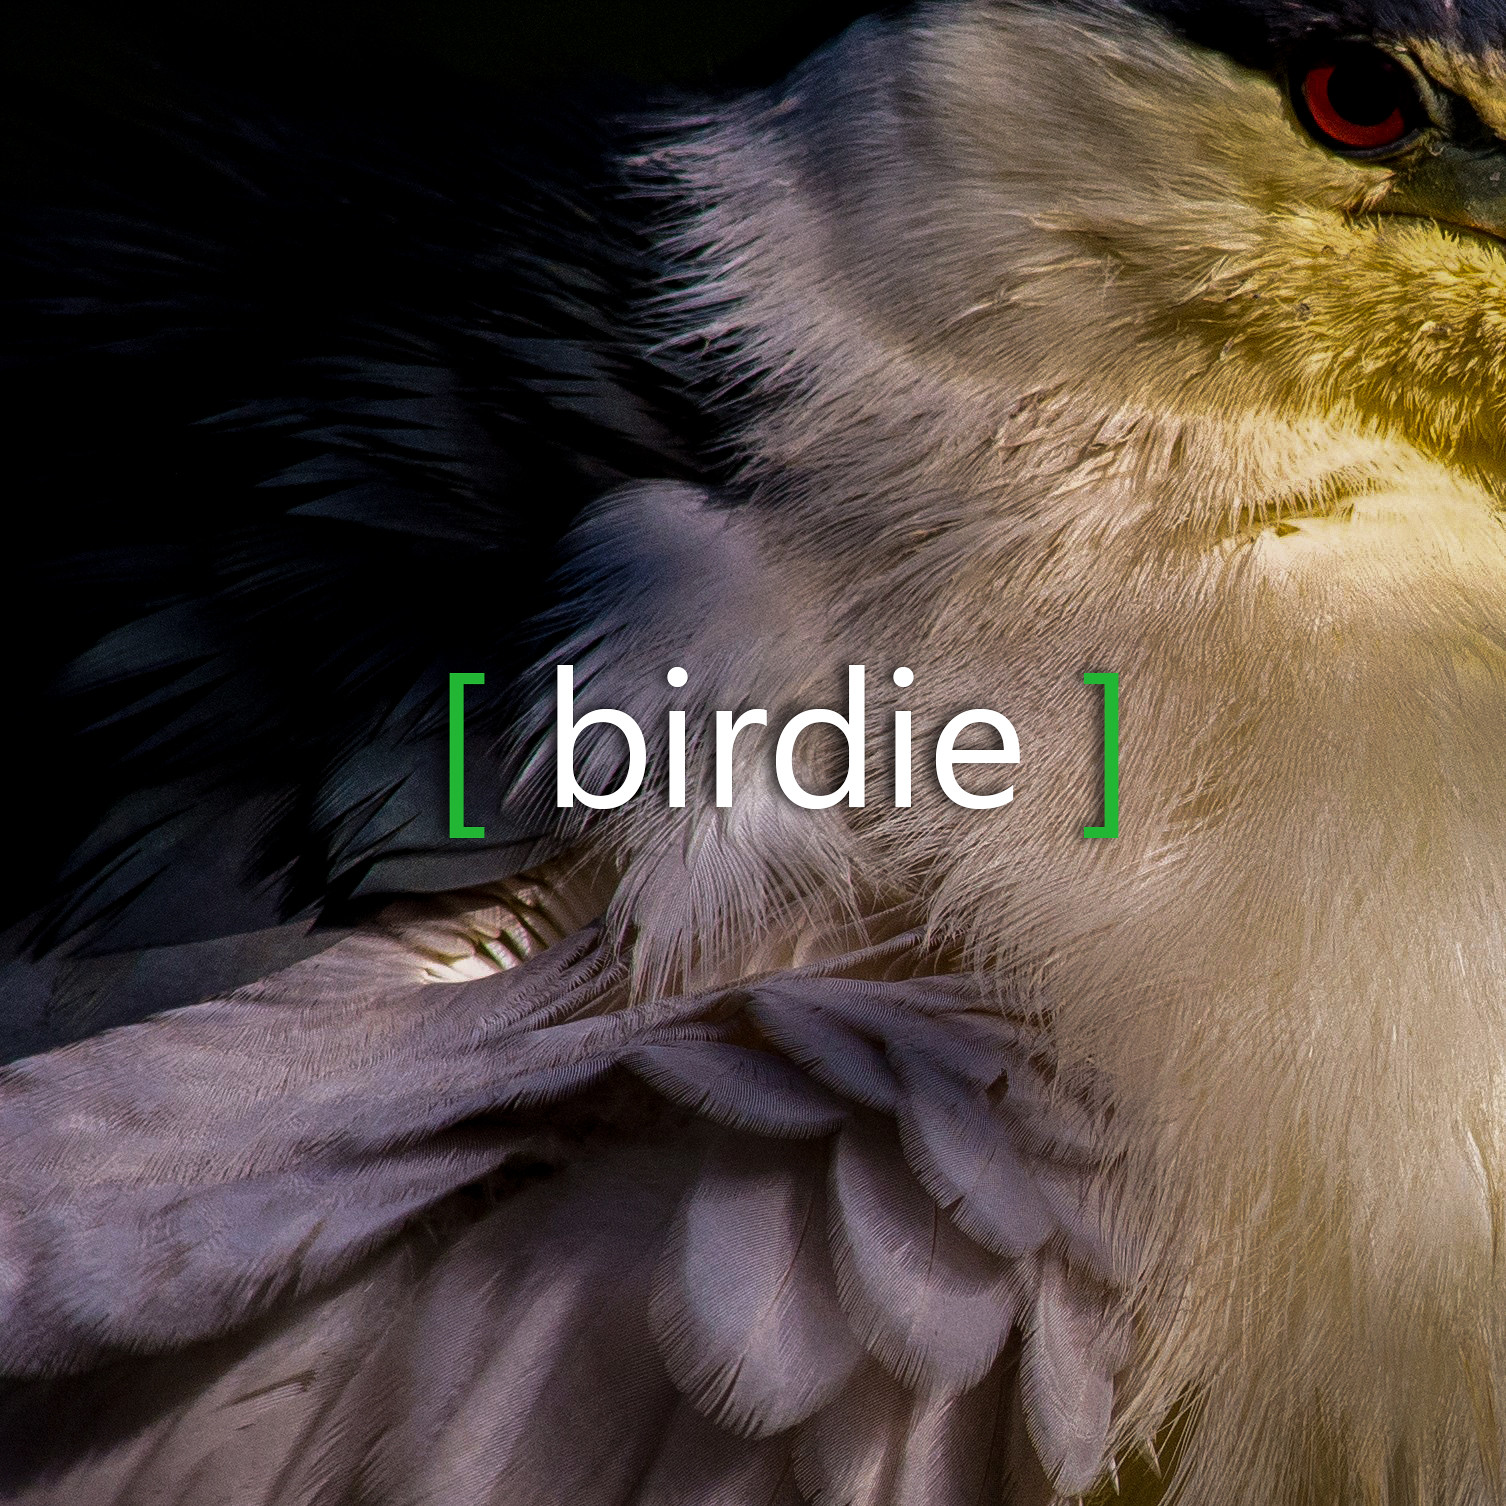 birdiegame.net